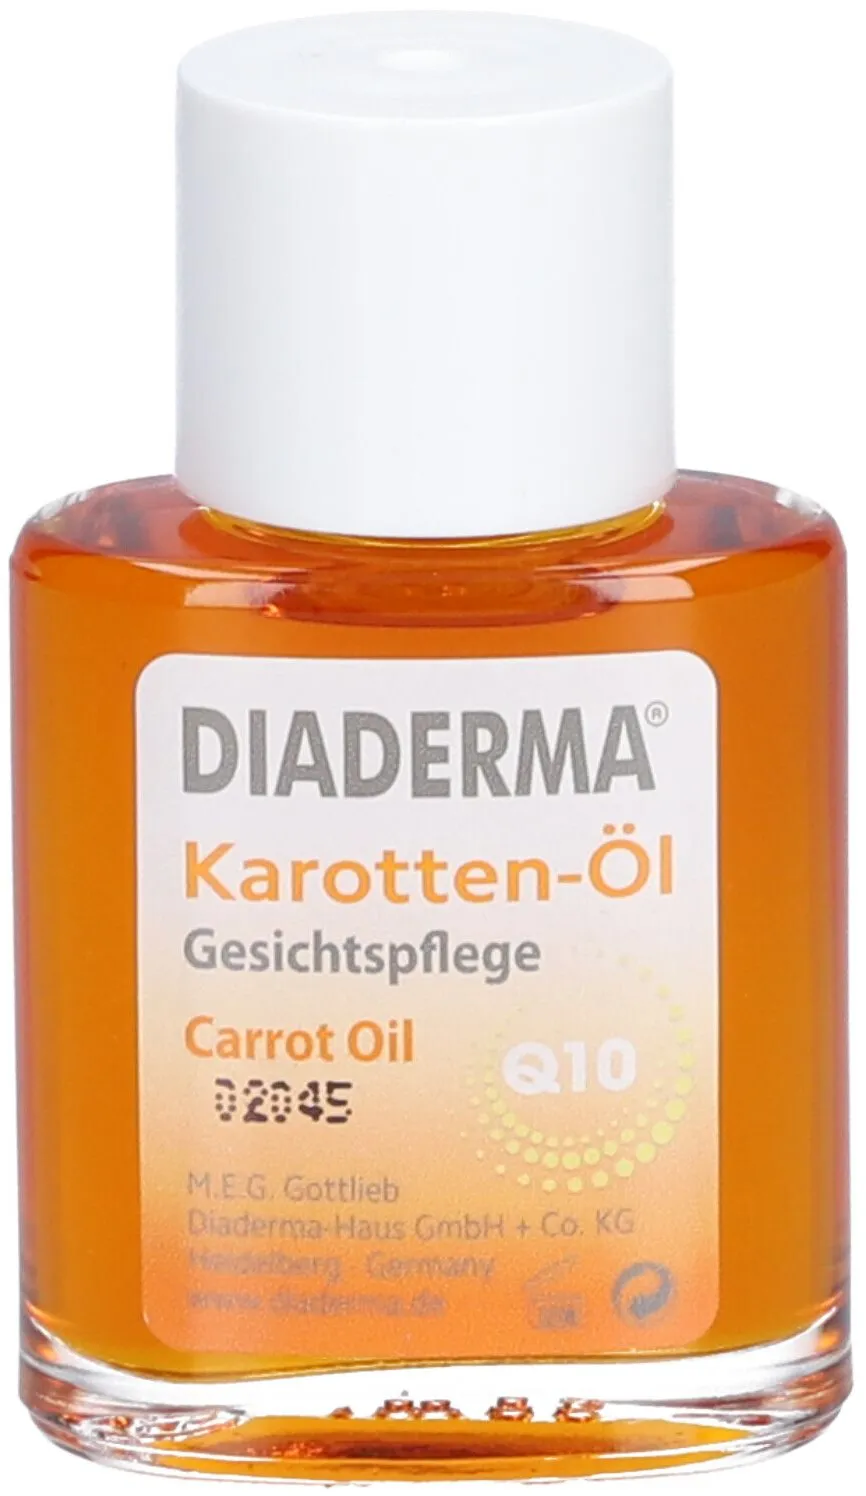 Diaderma® Karotten-Öl Q10